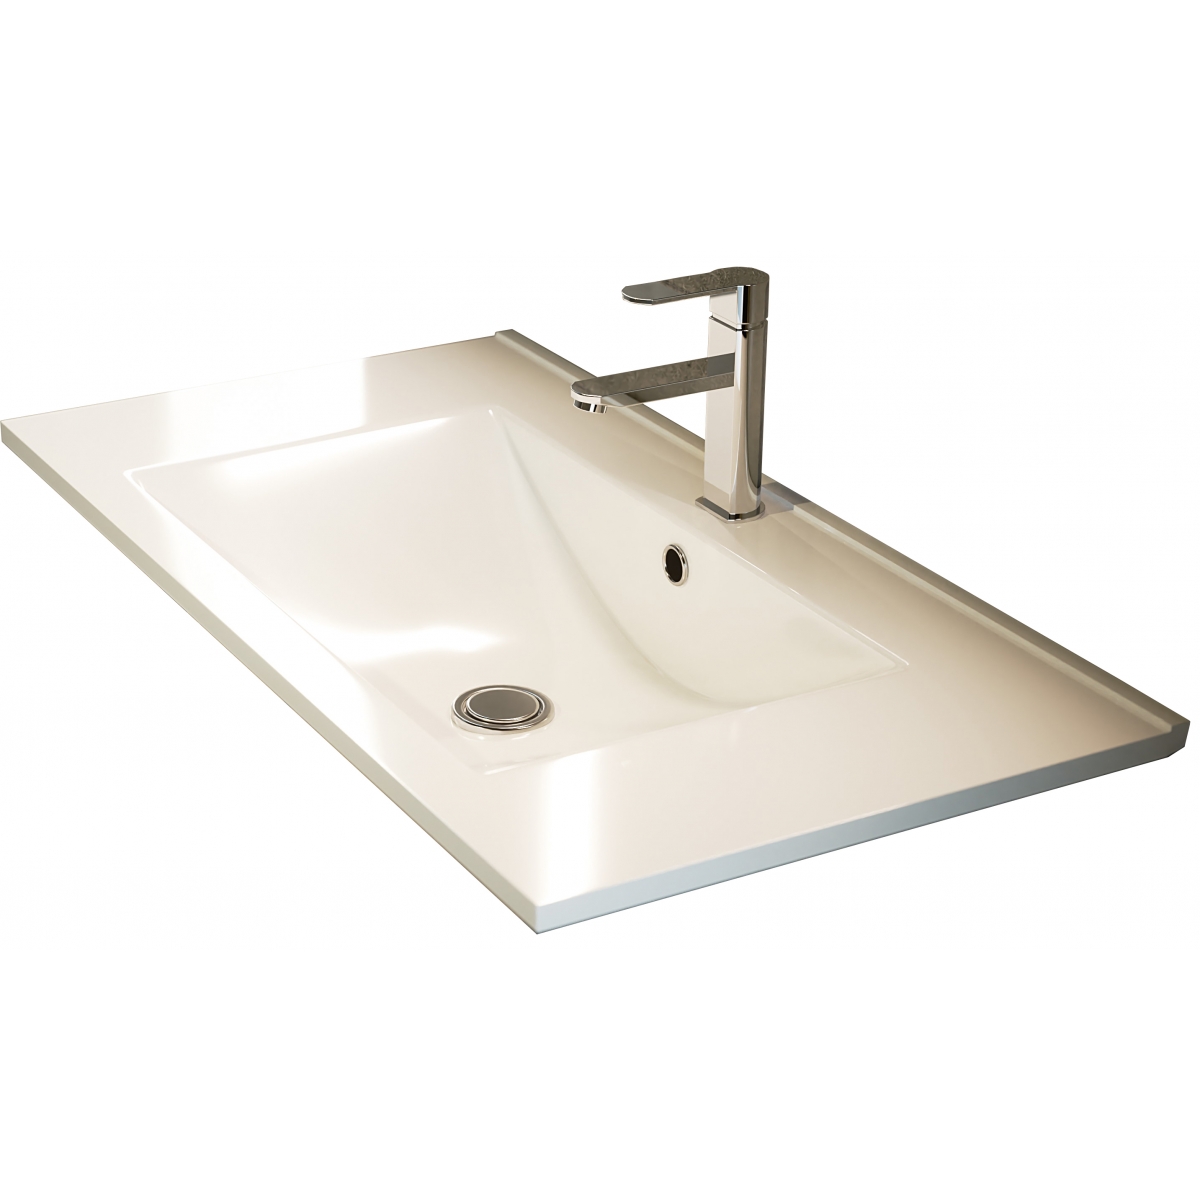 Fotos ambiente de Mueble de baño suspendido Dundee de 80 cm de ancho color Cemento con lavabo integrado [54434]